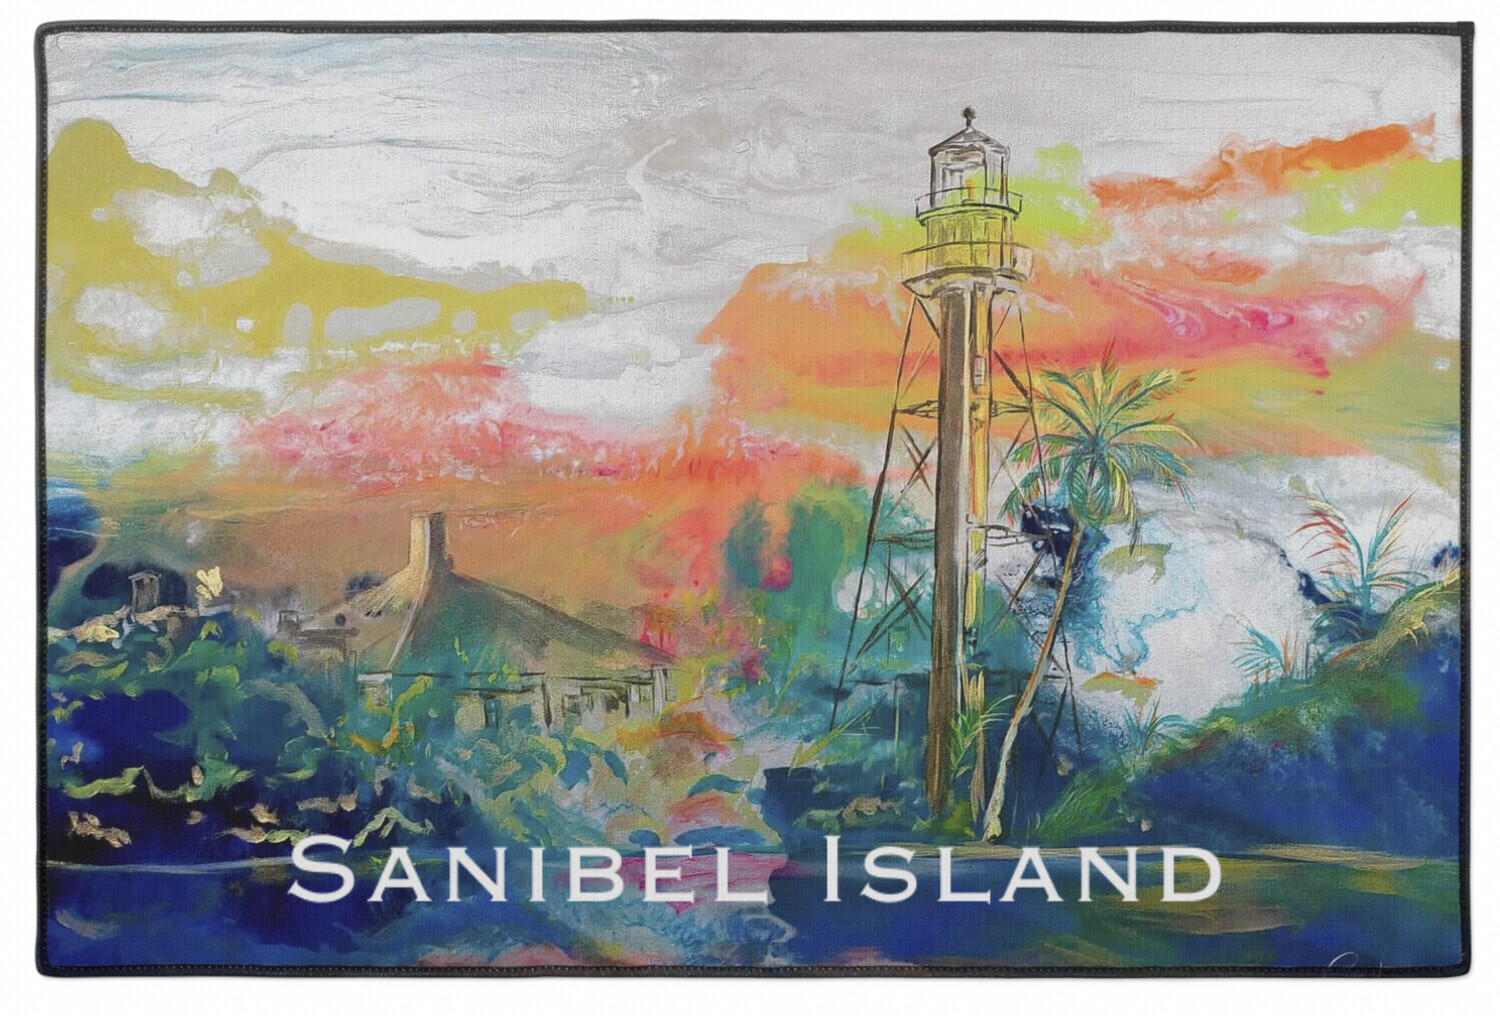 Our Sanibel Lighthouse "Sanibel Island" Indoor/Outdoor Rug